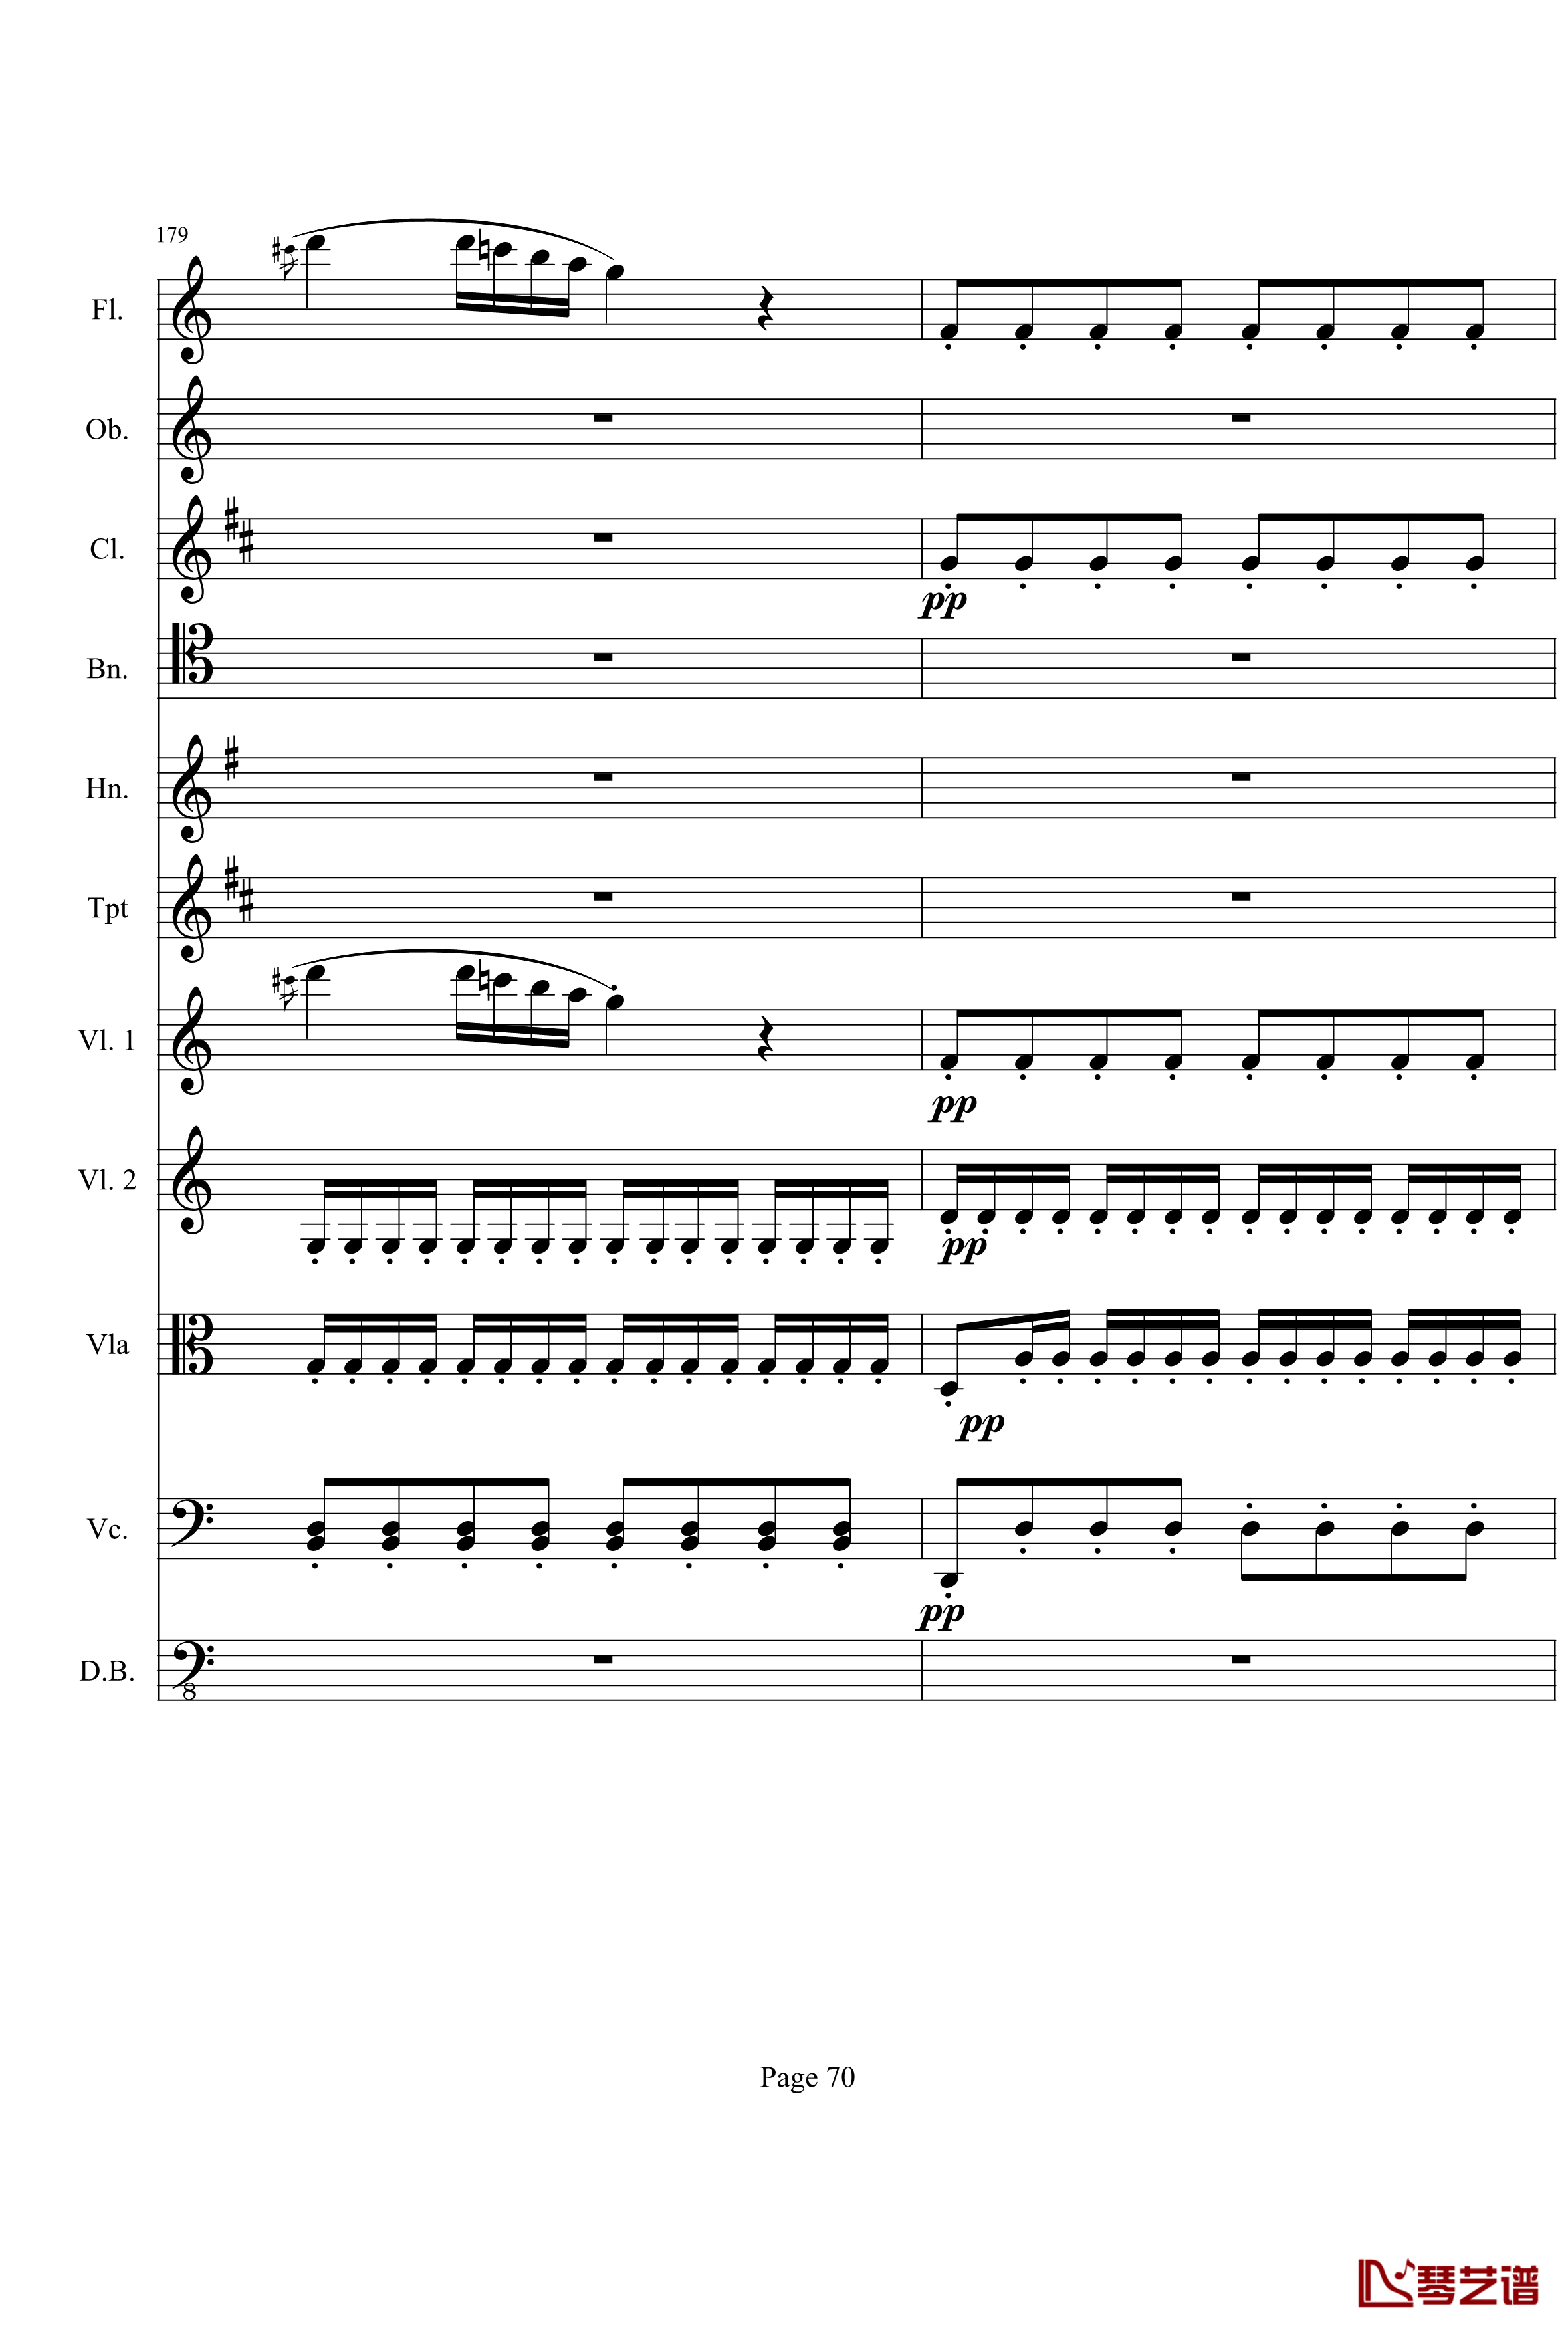 奏鸣曲之交响钢琴谱-第21-Ⅰ-贝多芬-beethoven70